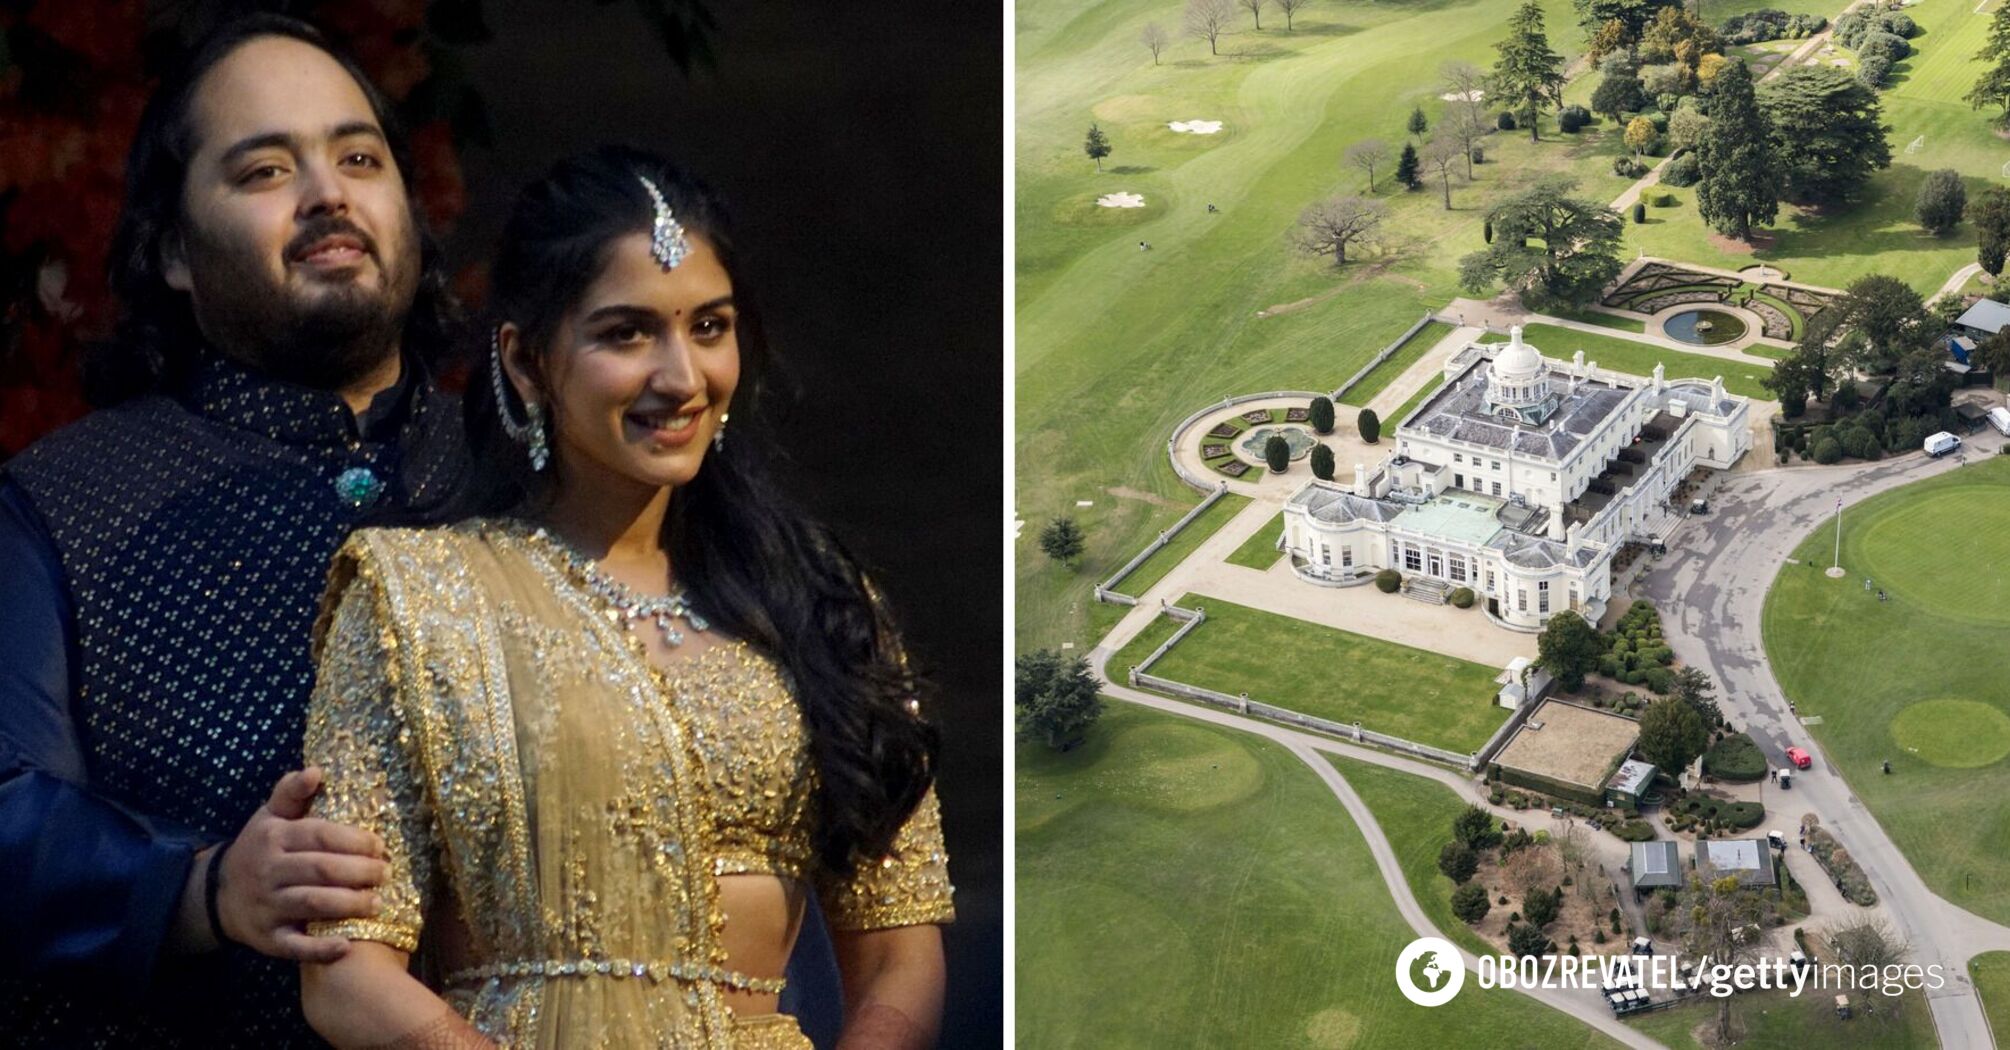 'Ślub roku' ciąg dalszy: Najbogatsza para Indii wyda przyjęcie za 73 miliony dolarów z księciem Harrym w Wielkiej Brytanii